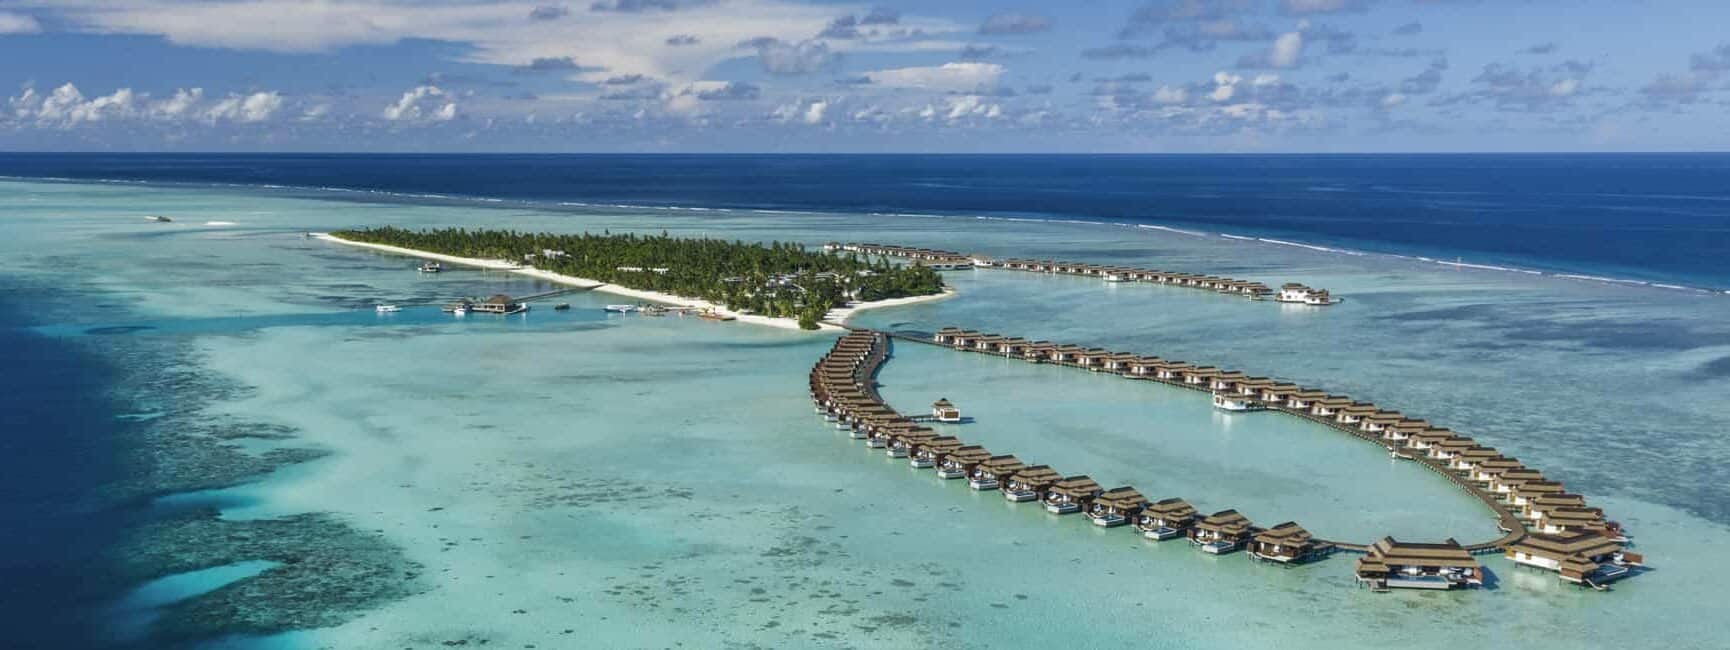 Pullman Maldives Maamutaa